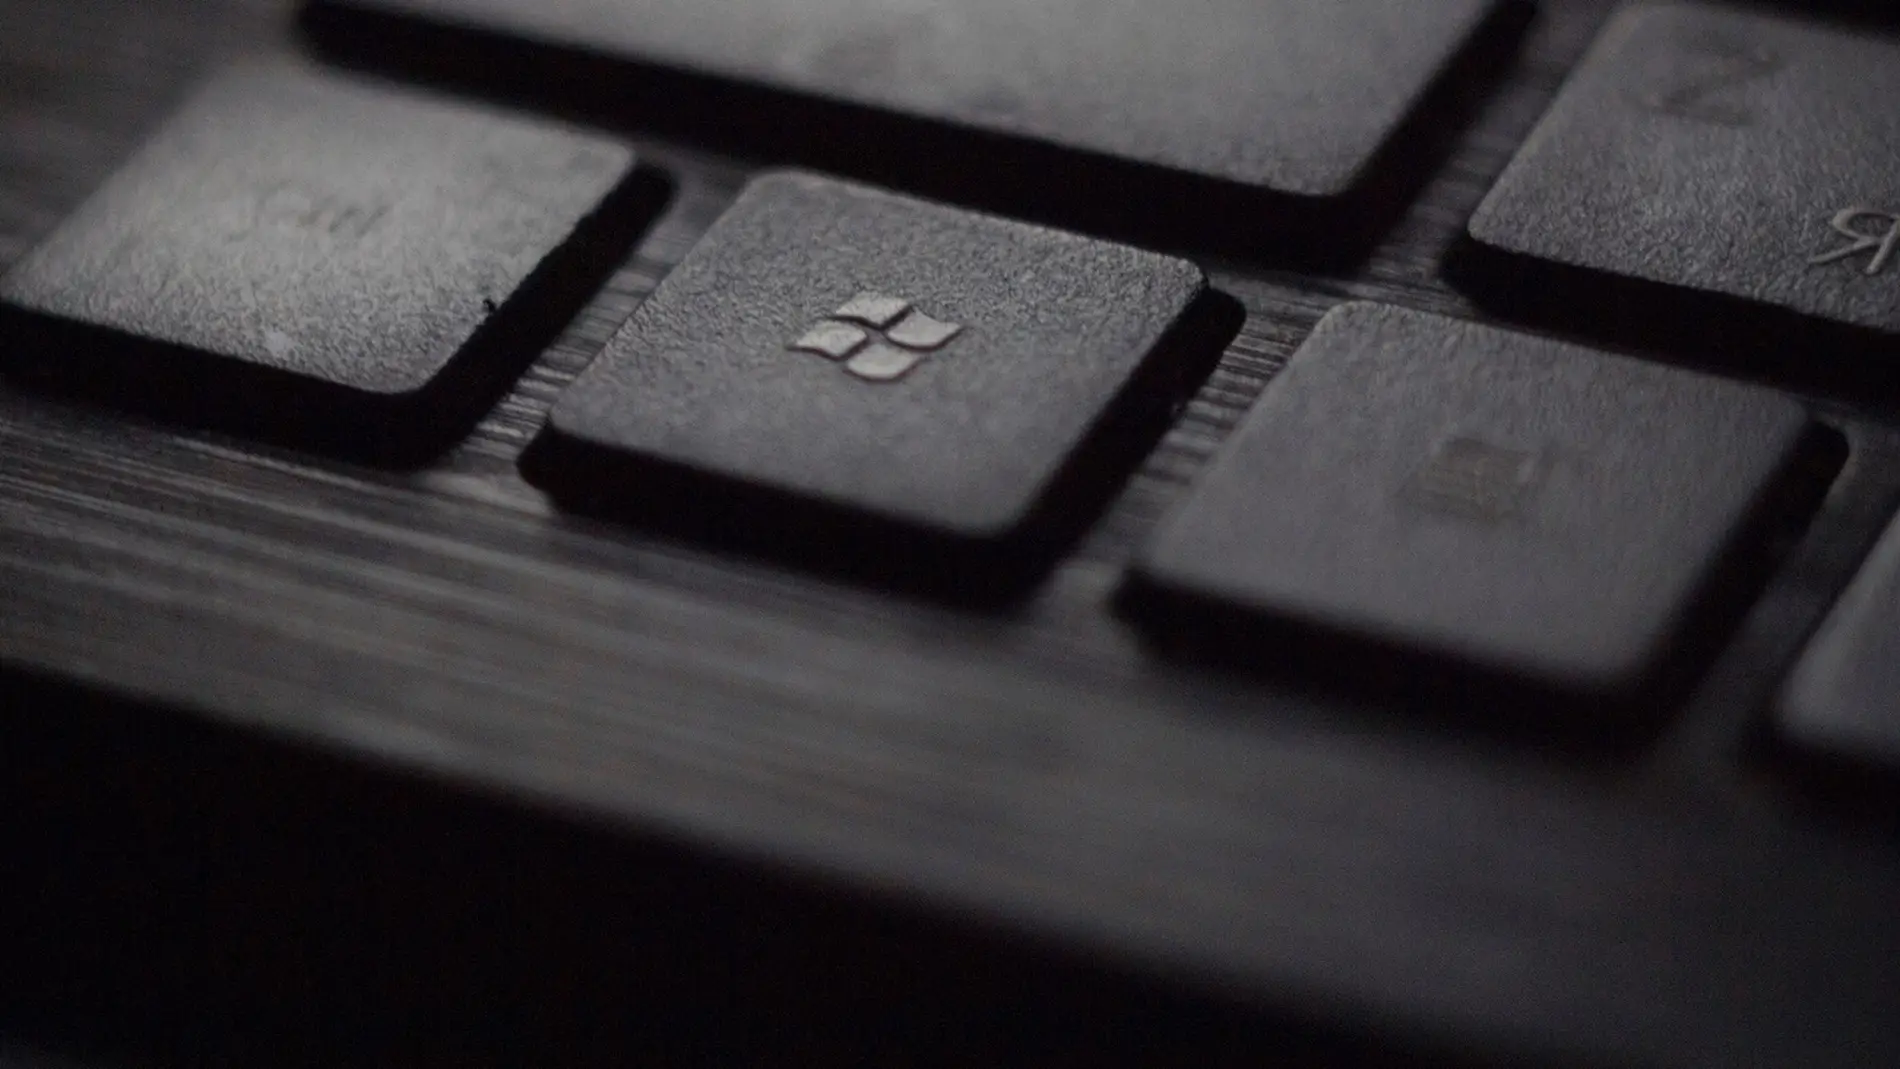 Microsoft seguirá ofreciendo actualizaciones para Windows 10, pero solo si pagas